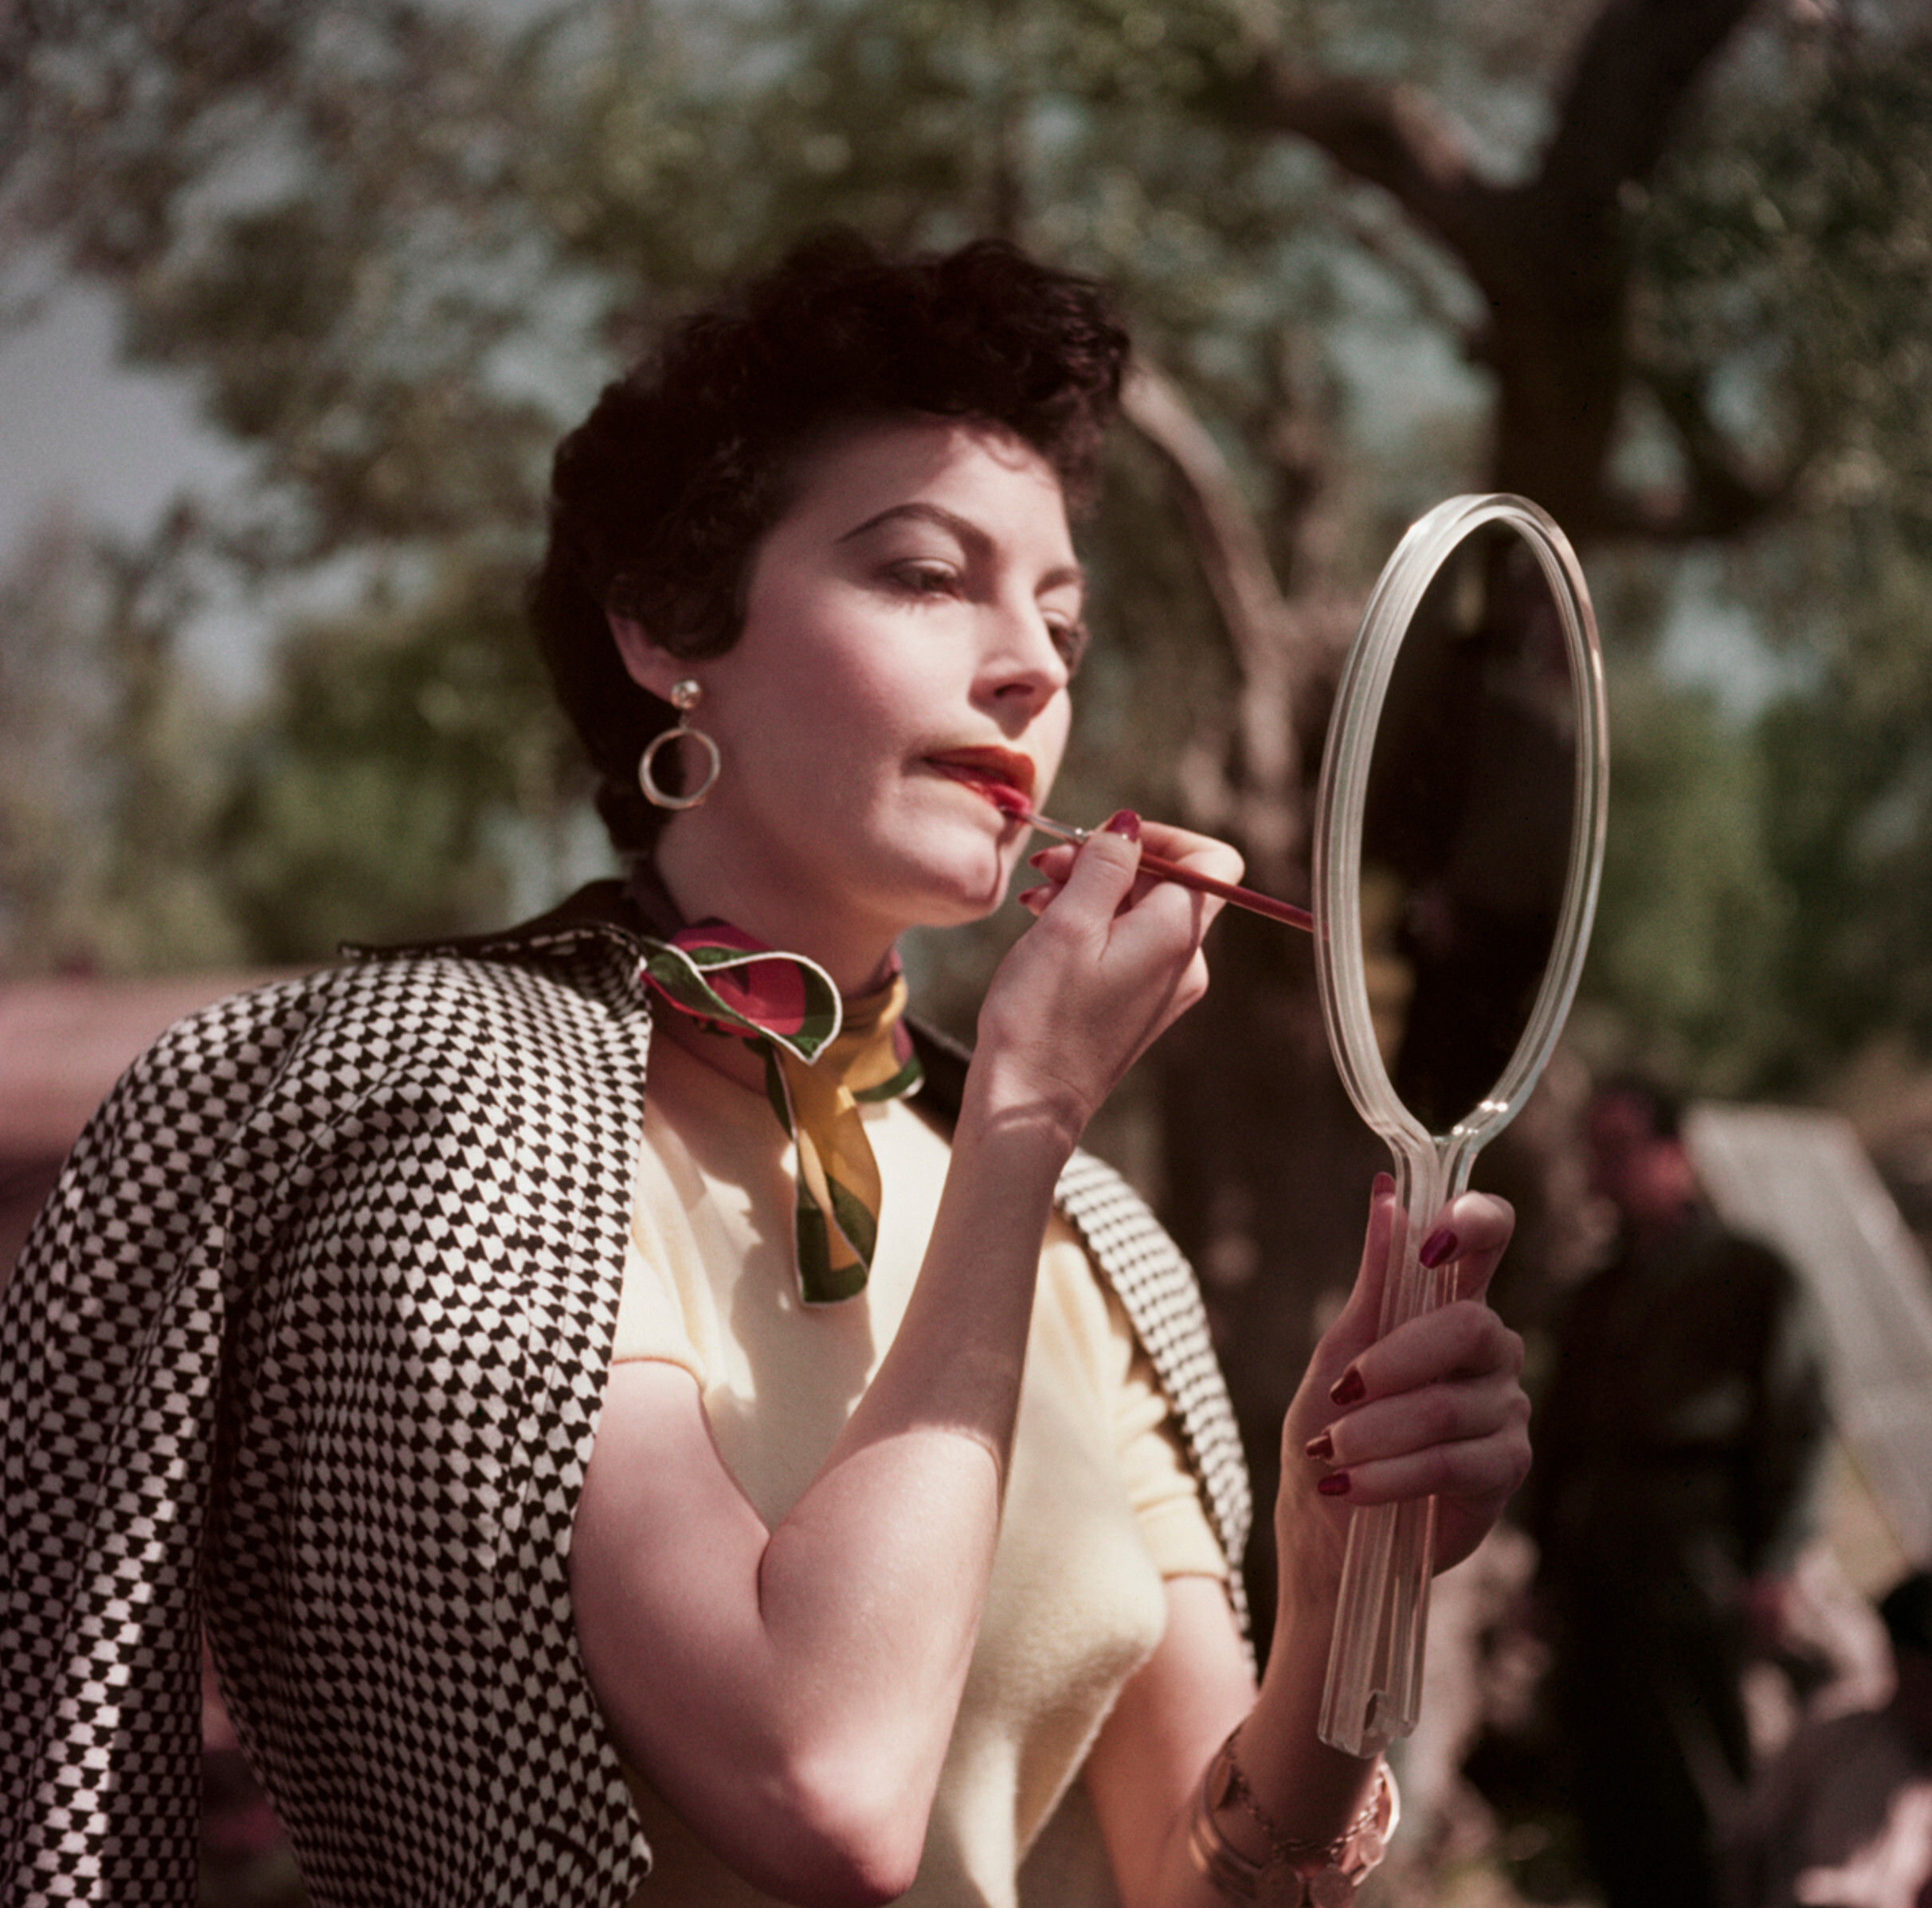 Ава Гарднер на съемках фильма Босоногая графиня, Тиволи, Италия, 1954 год. Фотограф Роберт Капа